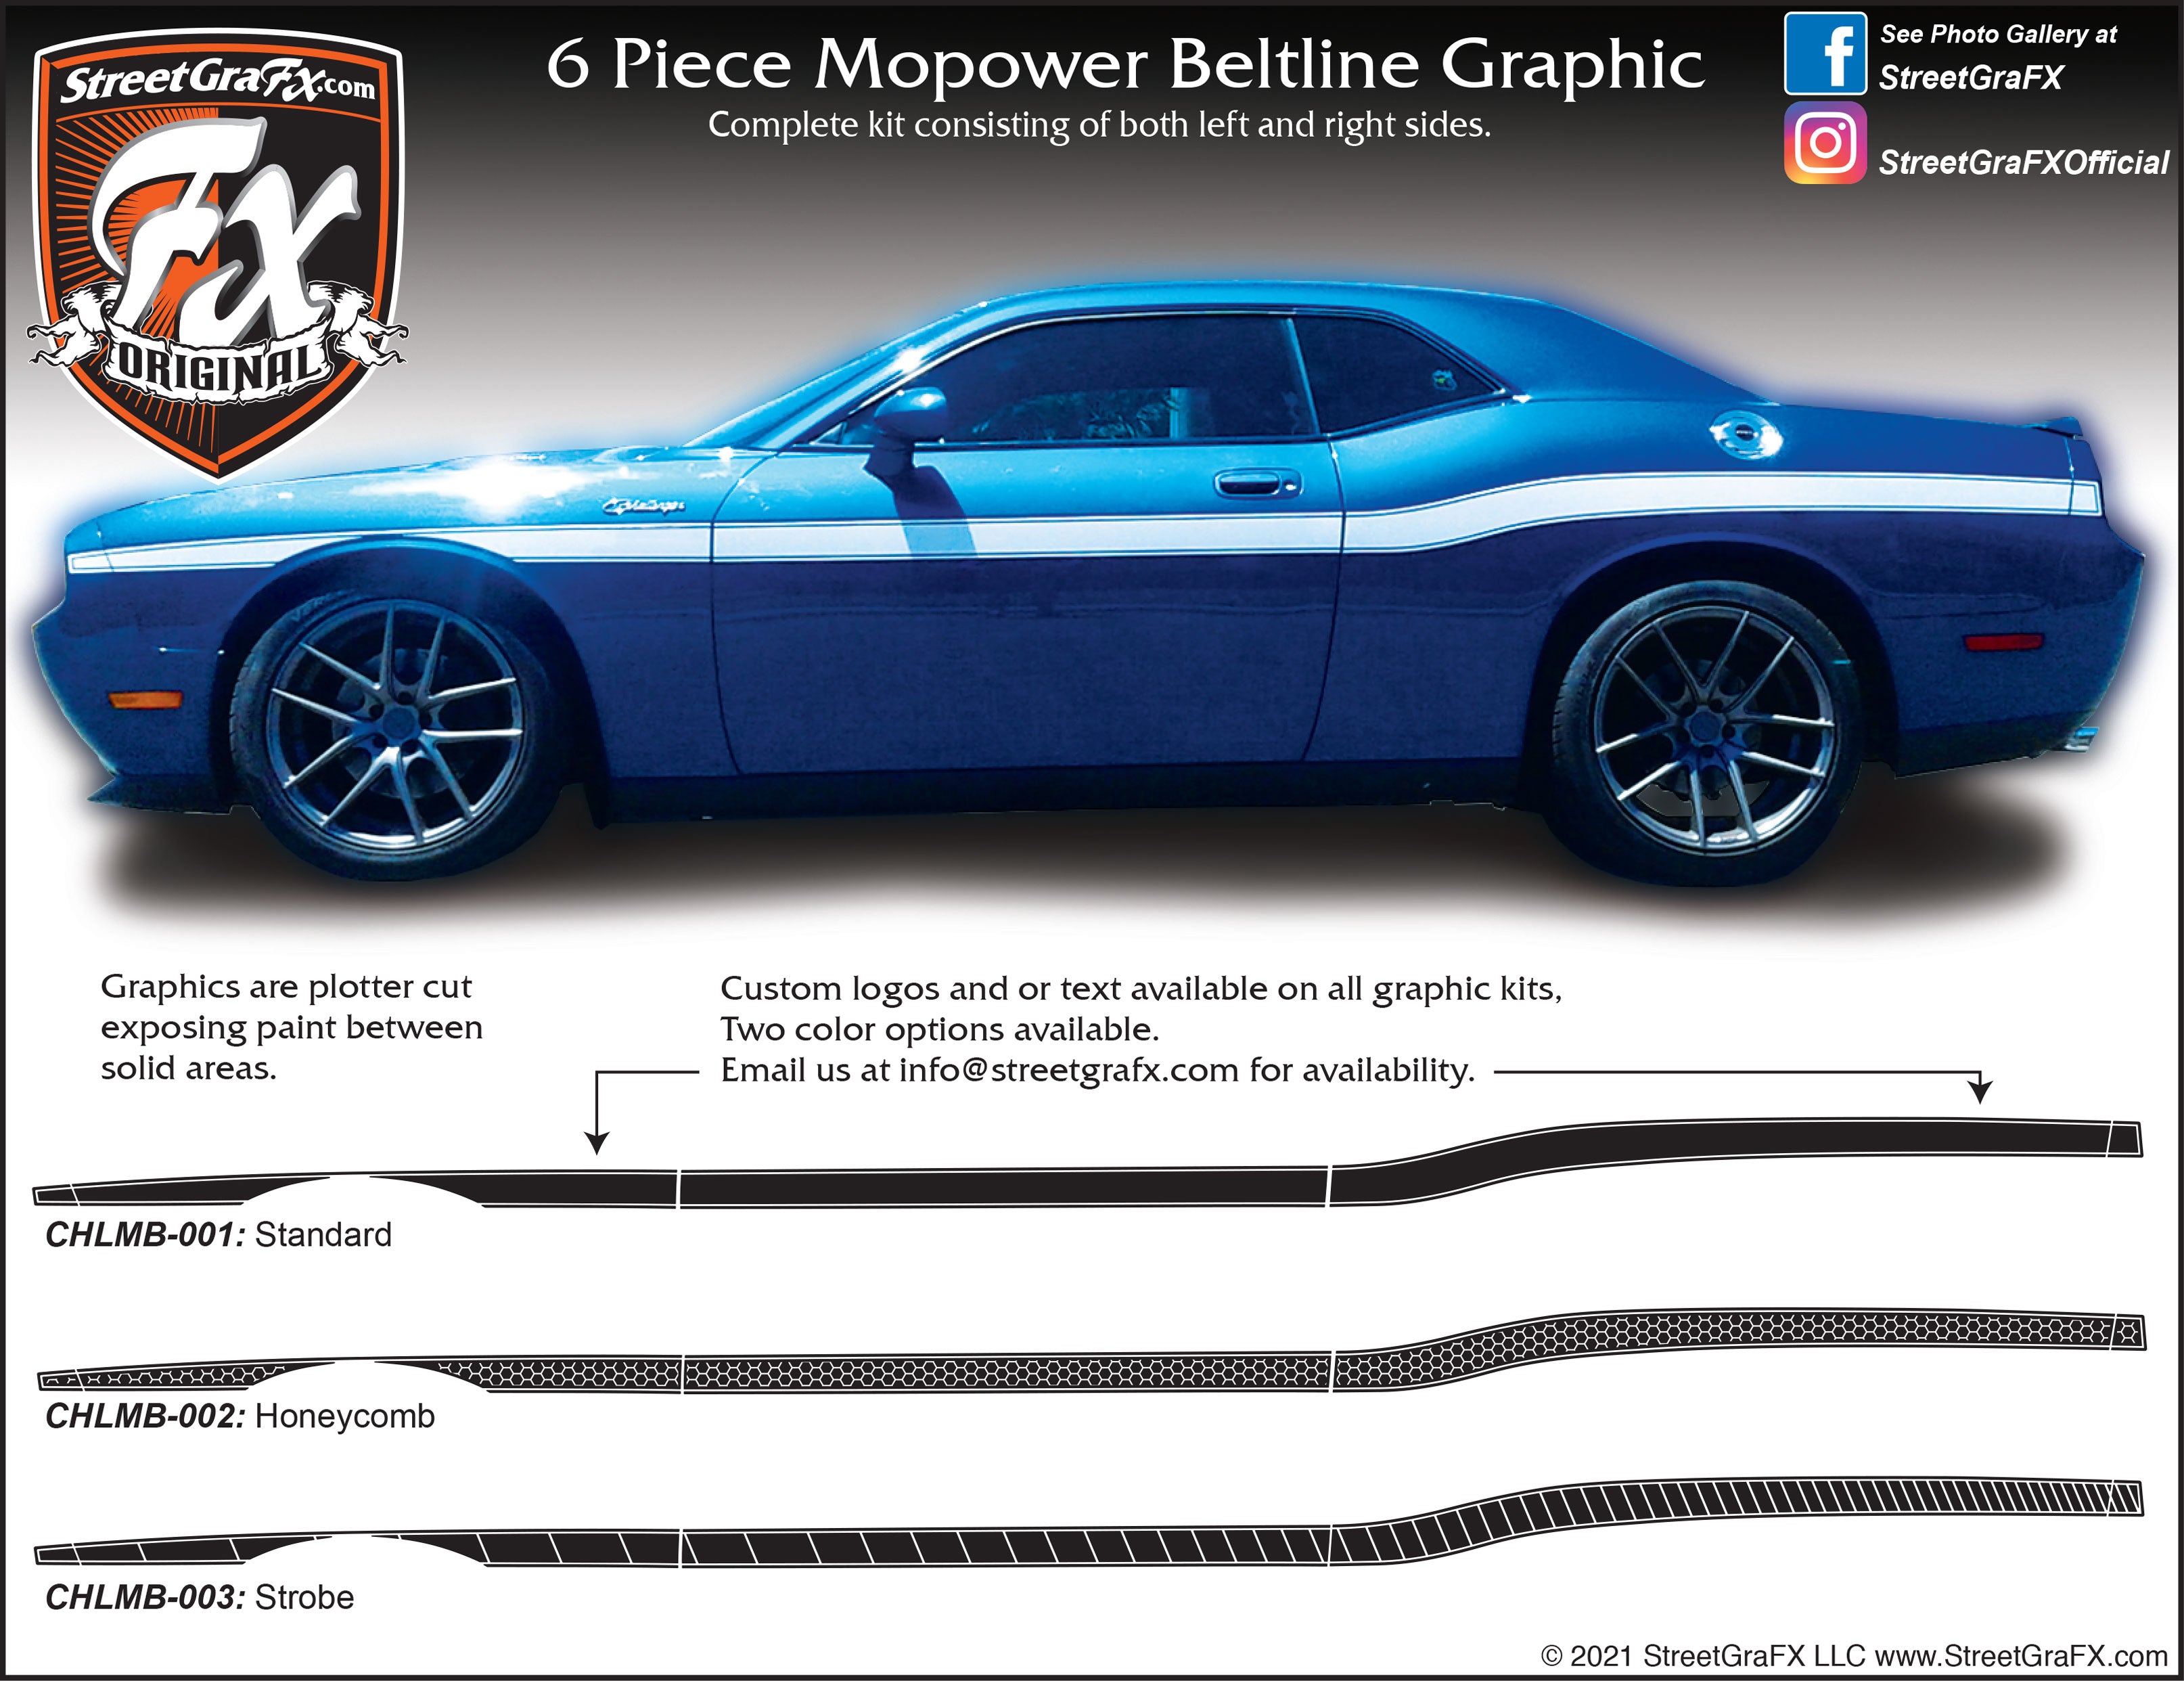 2009 - 2021 Dodge Challenger Mopower Beltline Stripe Complete Graphic Kit "Left & Right Sides"